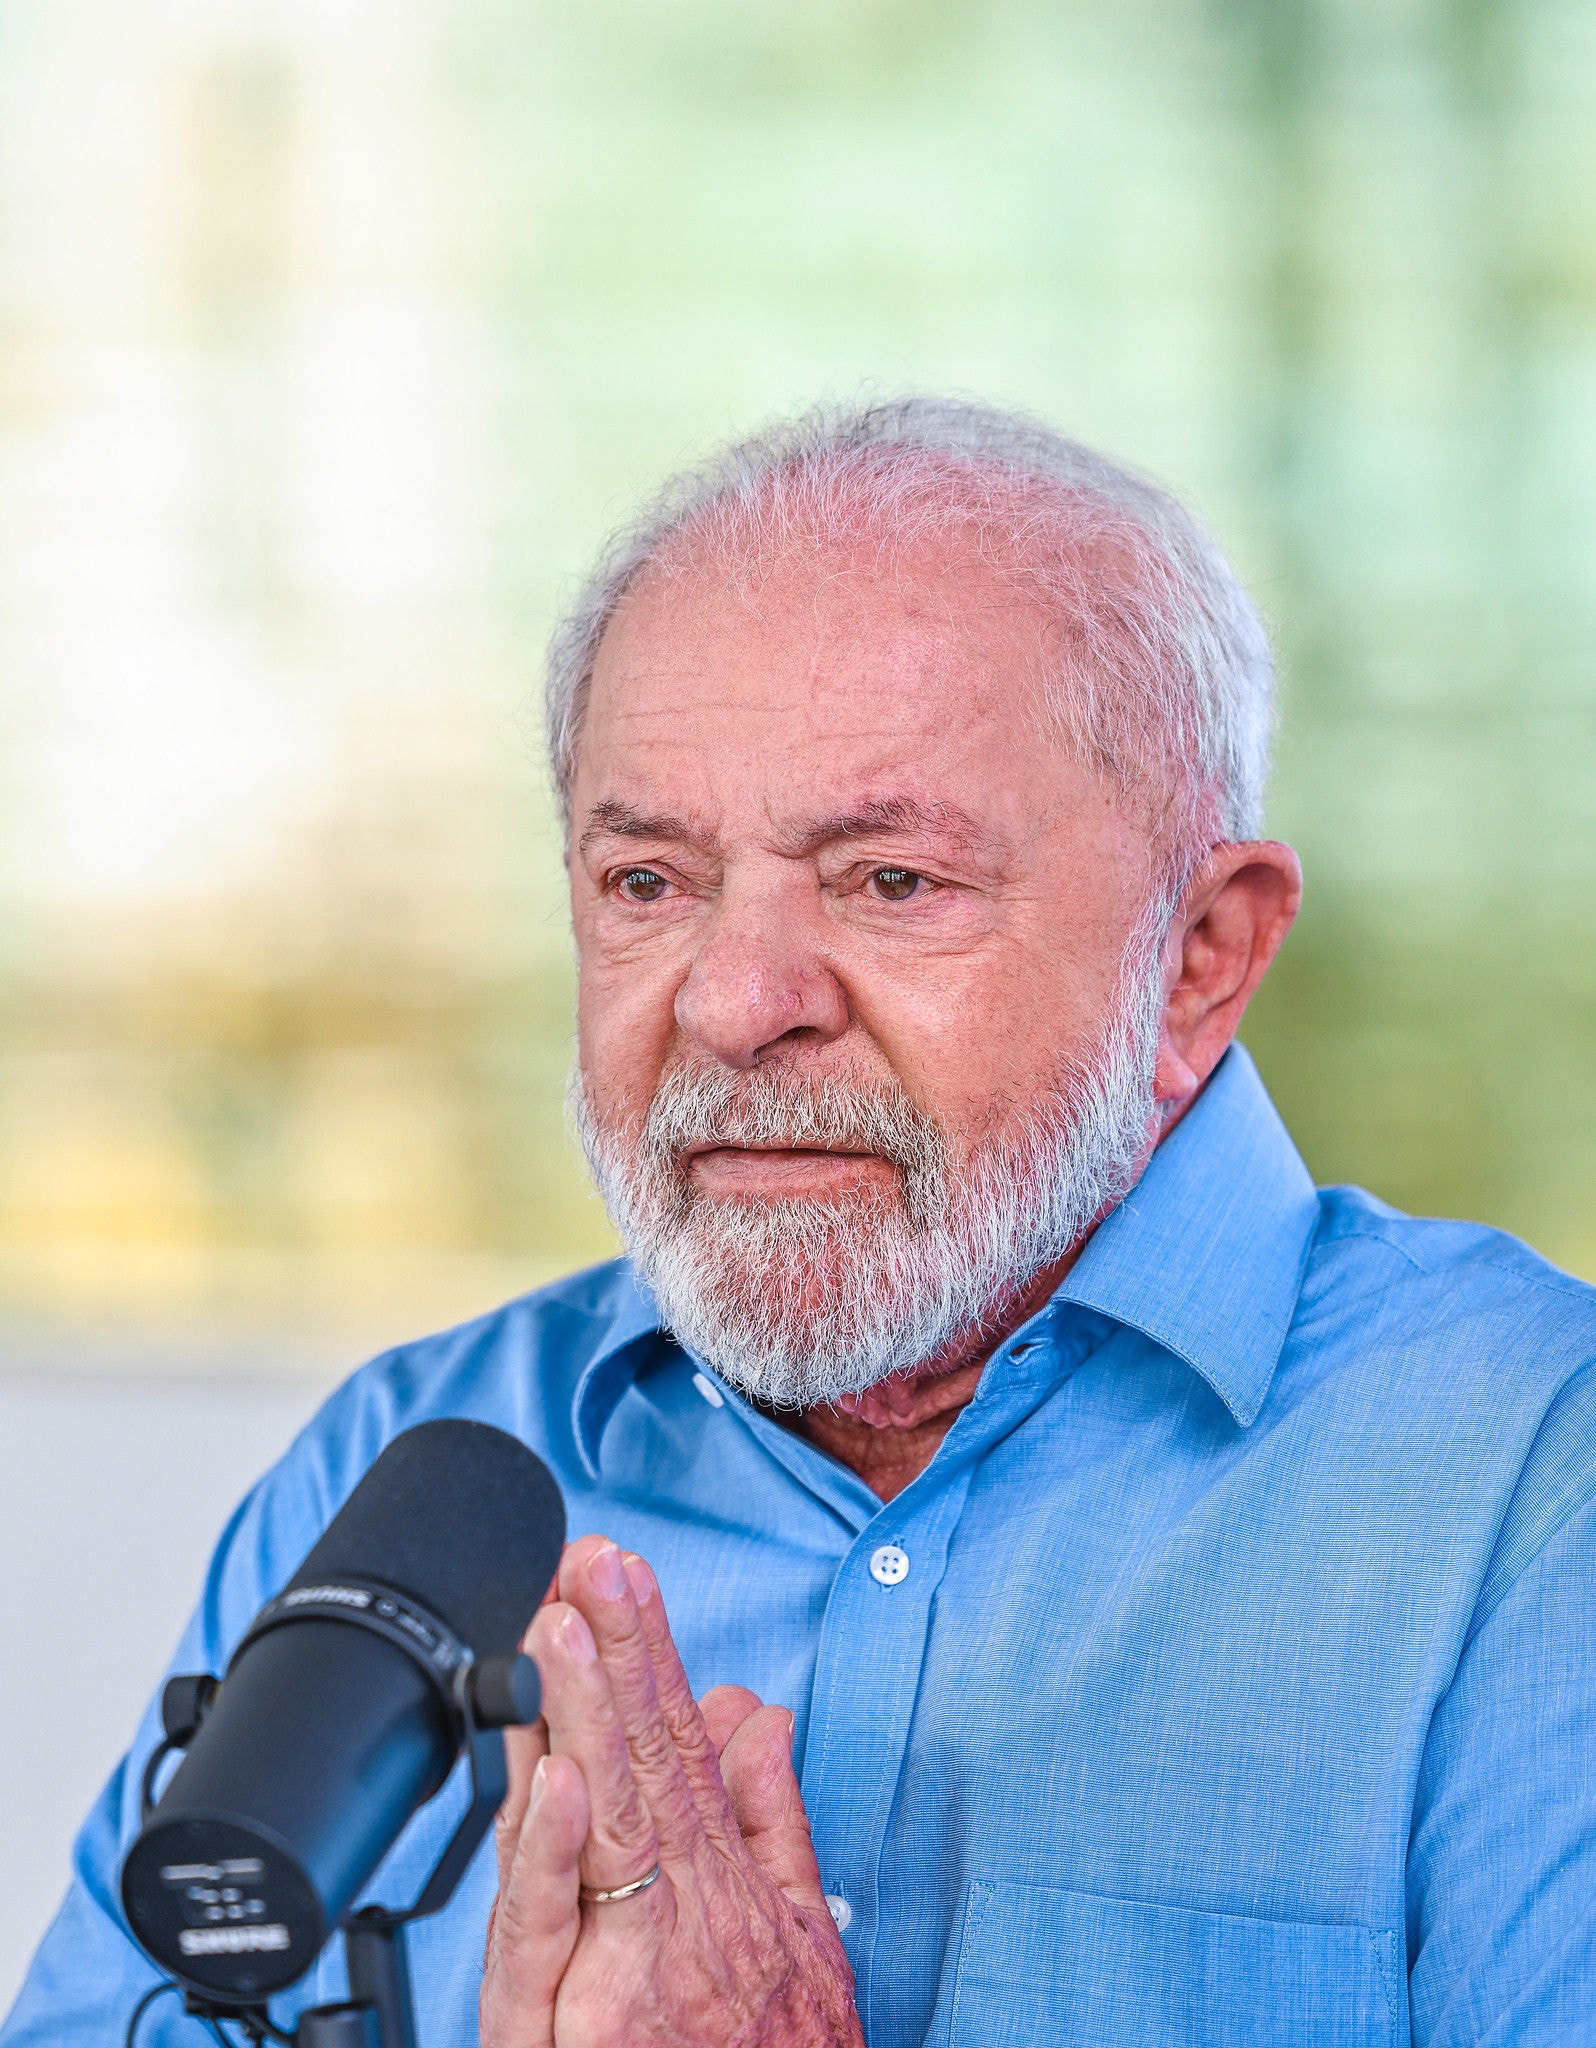 Presidente Lula concedeu entrevista para emissoras de rádio nesta terça-feira (7)